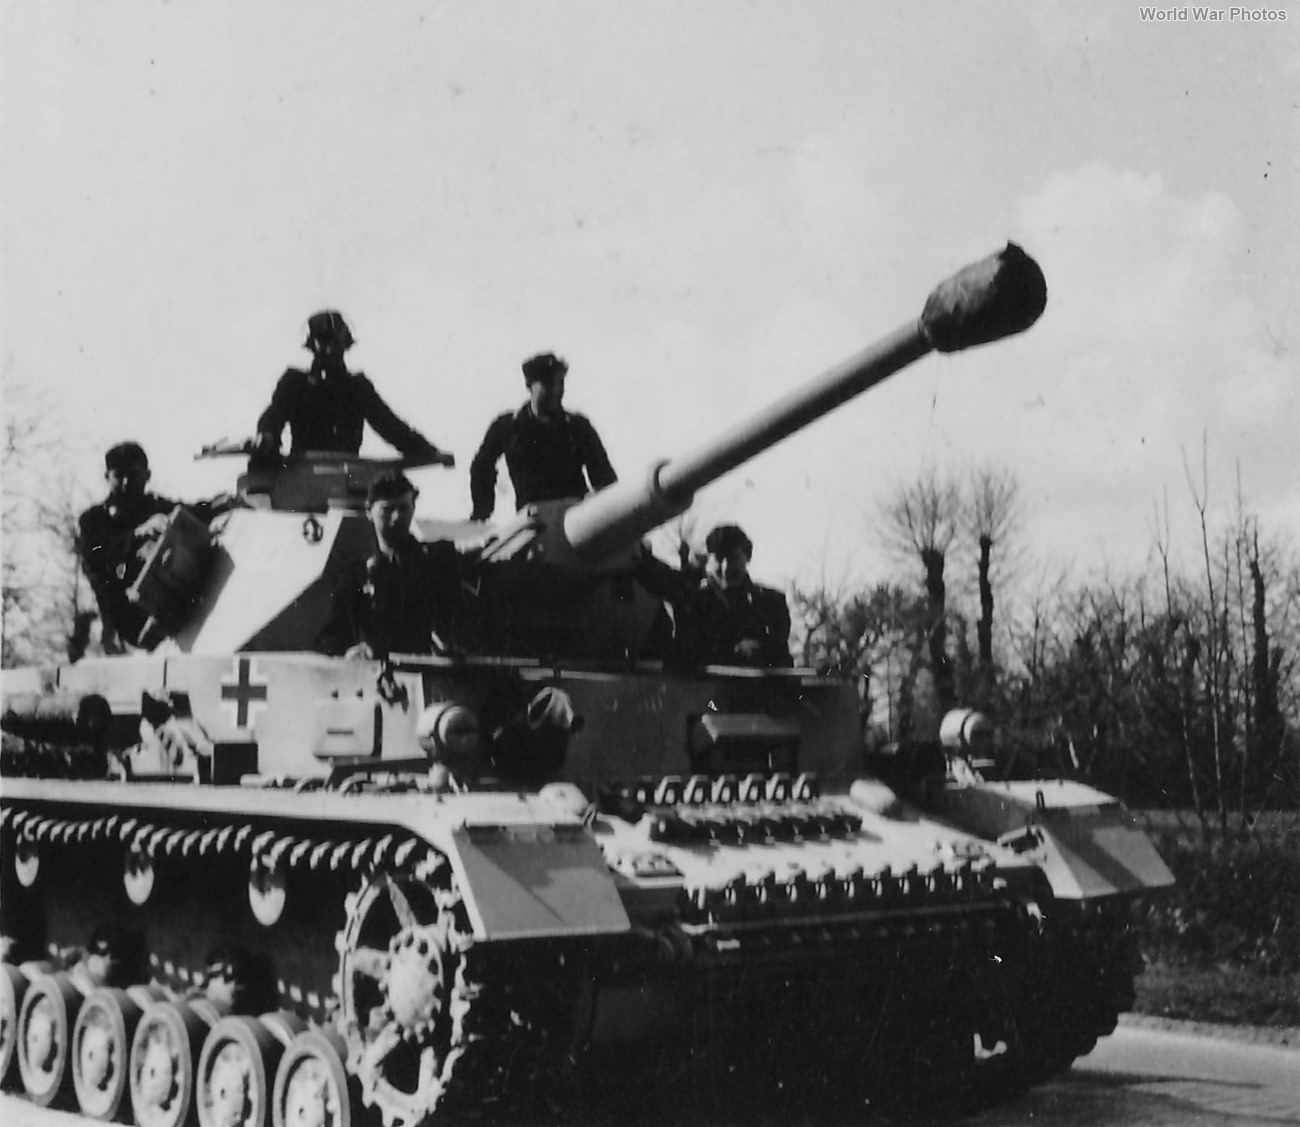 Panzer IV Ausf G 15 | World War Photos